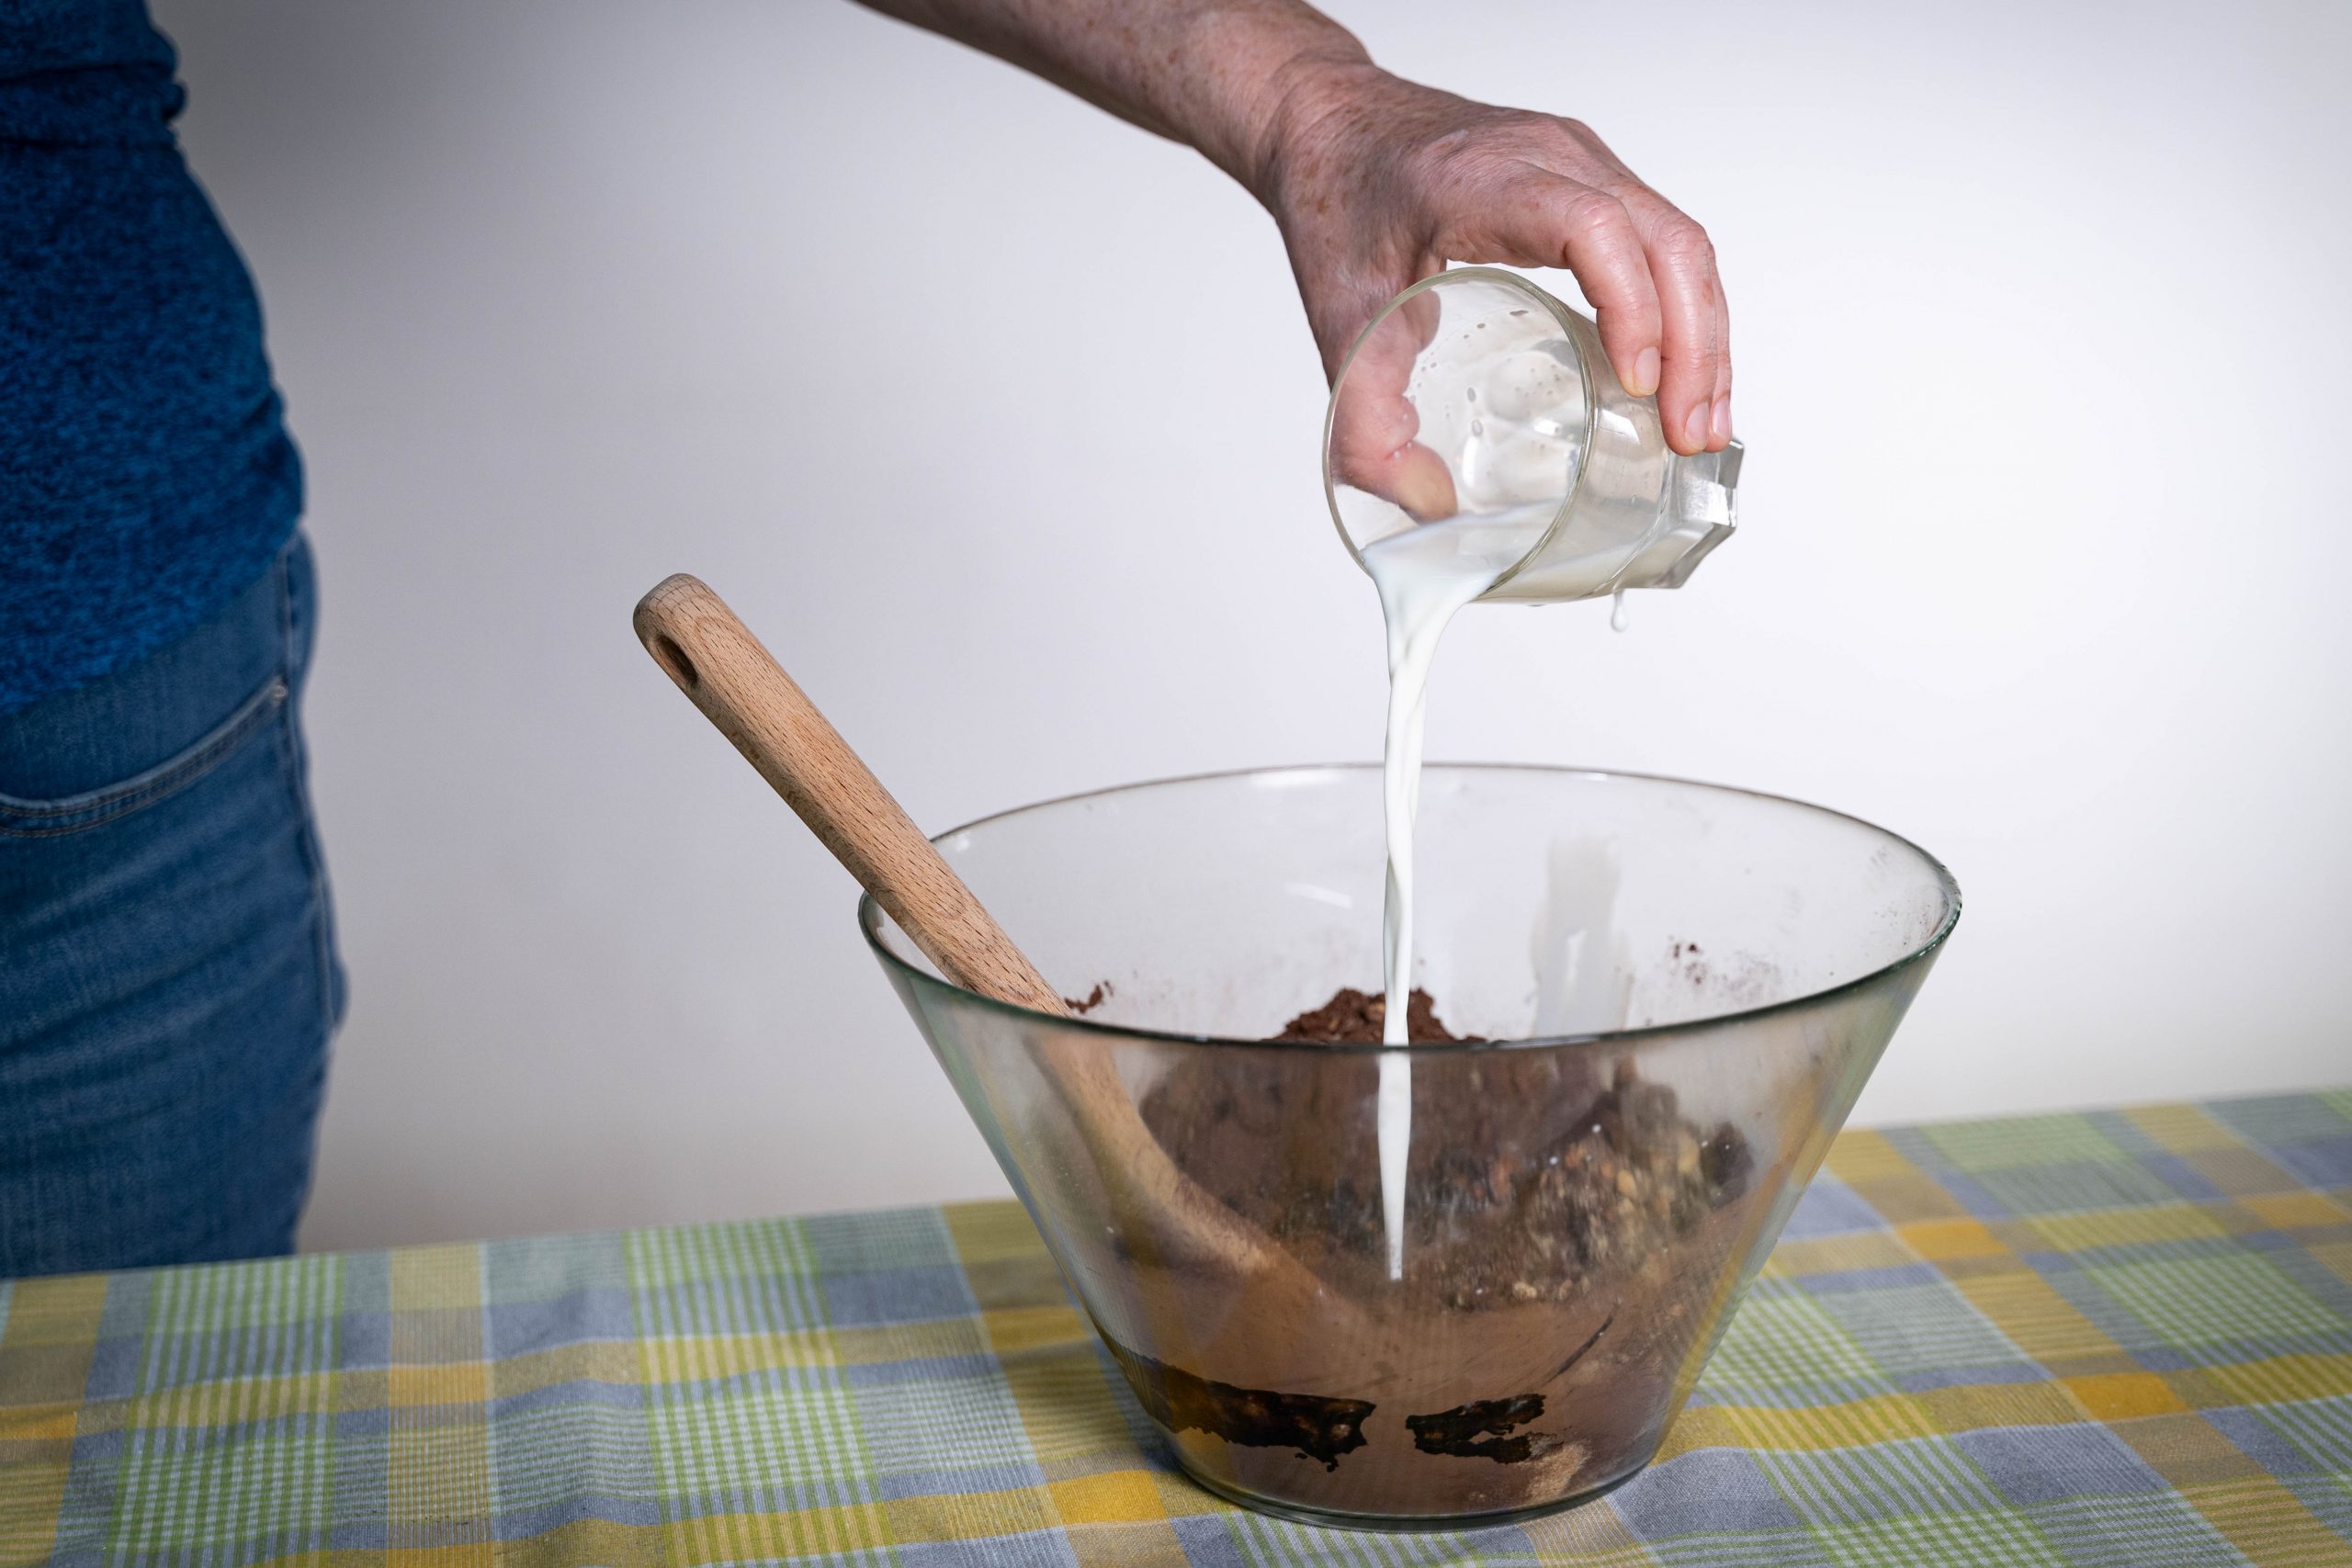 .יד שופכת חלב מכוס לתוך קערה עם תערובת להכנת כדורי שוקולד